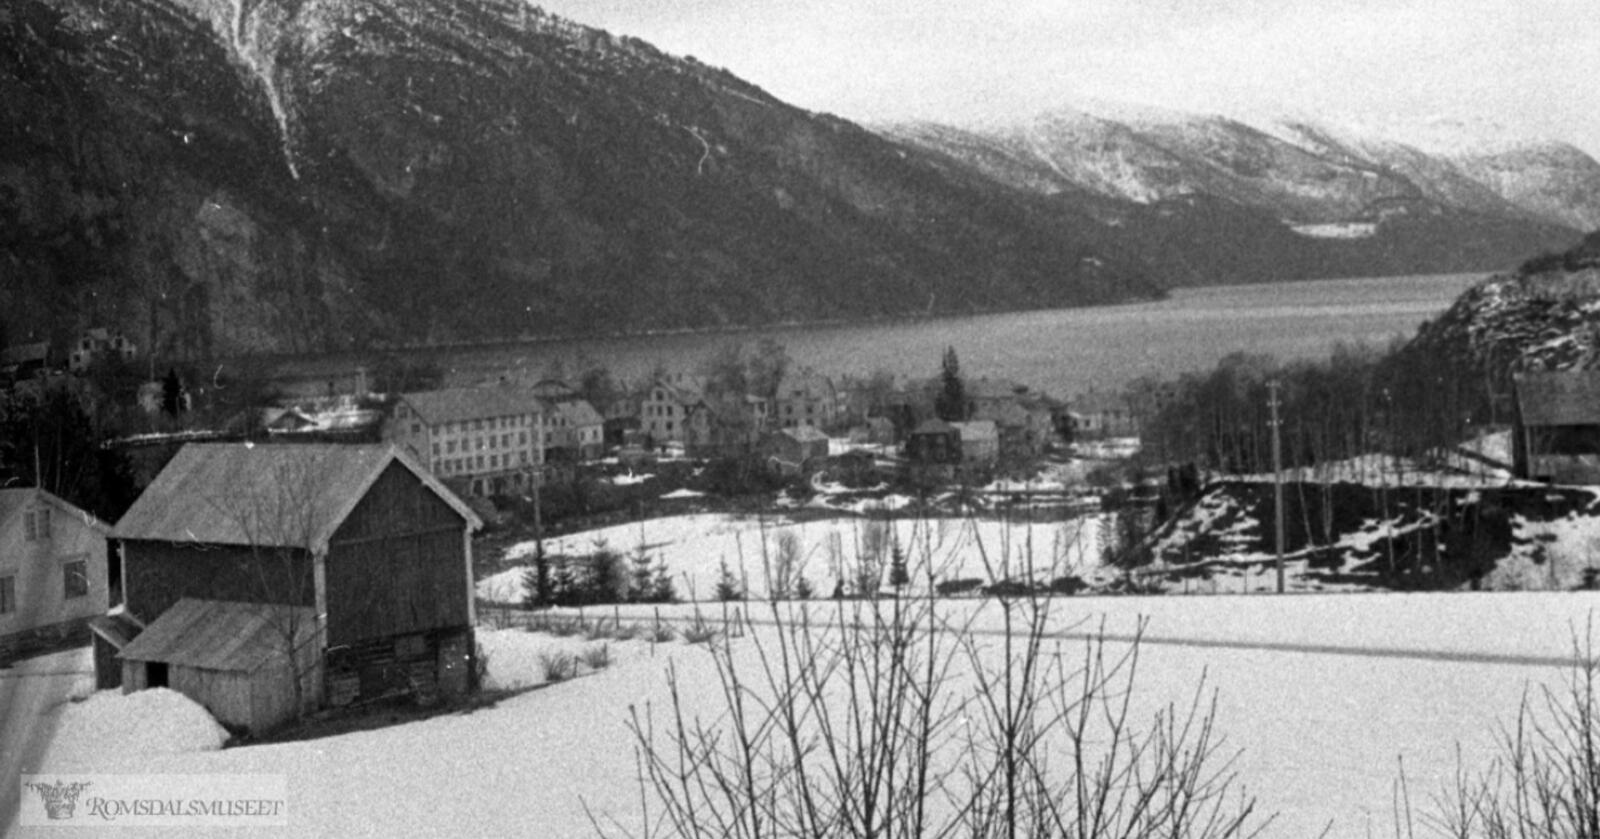 Sløgstad i Stranda kommune ligger ved Storfjorden som her strekker seg inn i landet mot turistmagneten Geiranagerfjorden. Illustrasjonsfoto: Sæbjørn Sæbjørnsen/ Romsdalsmuseet/ Digitalt Museum